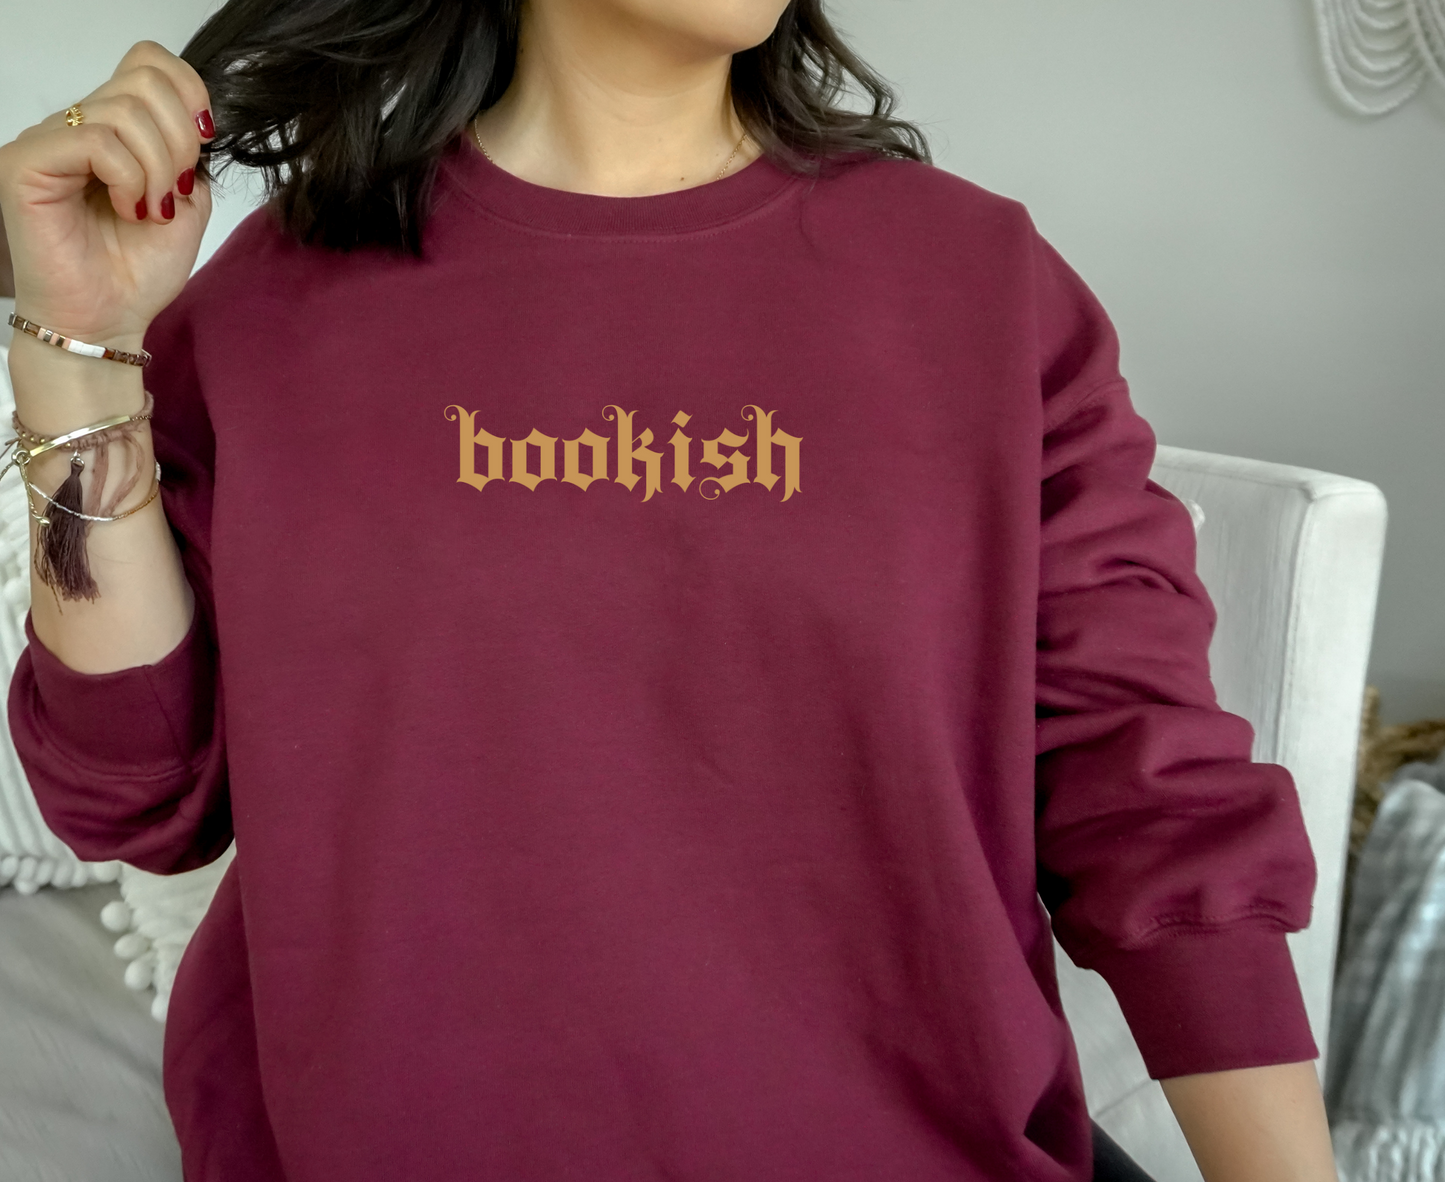 Bookish Alt Old English Sweatshirt